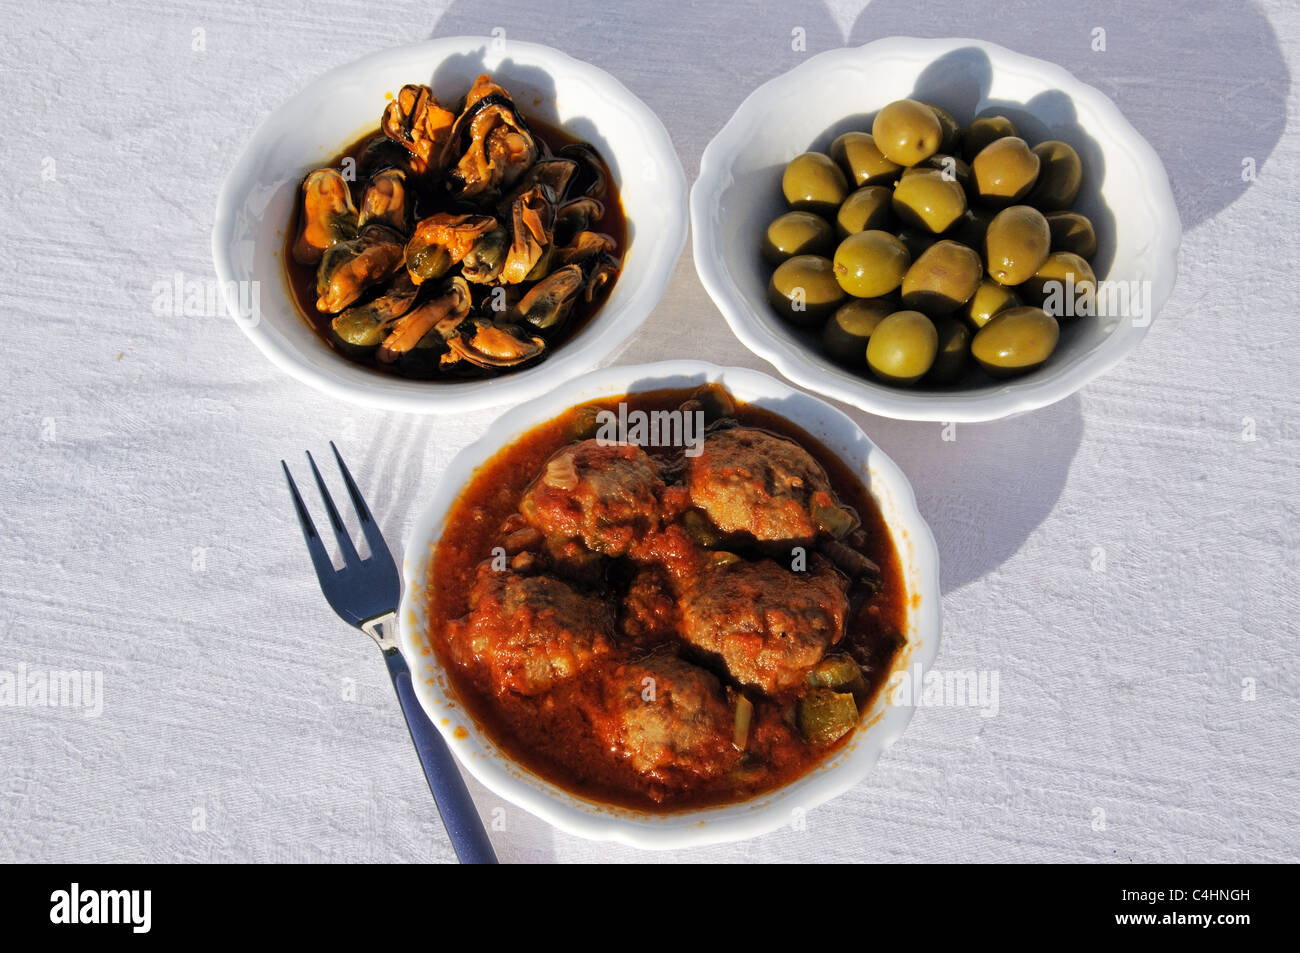 Sélection de Tapas - olives vertes, des moules au piment et vinaigrette aux tomates et boulettes de viande, Costa del Sol, la province de Malaga, Espagne Banque D'Images